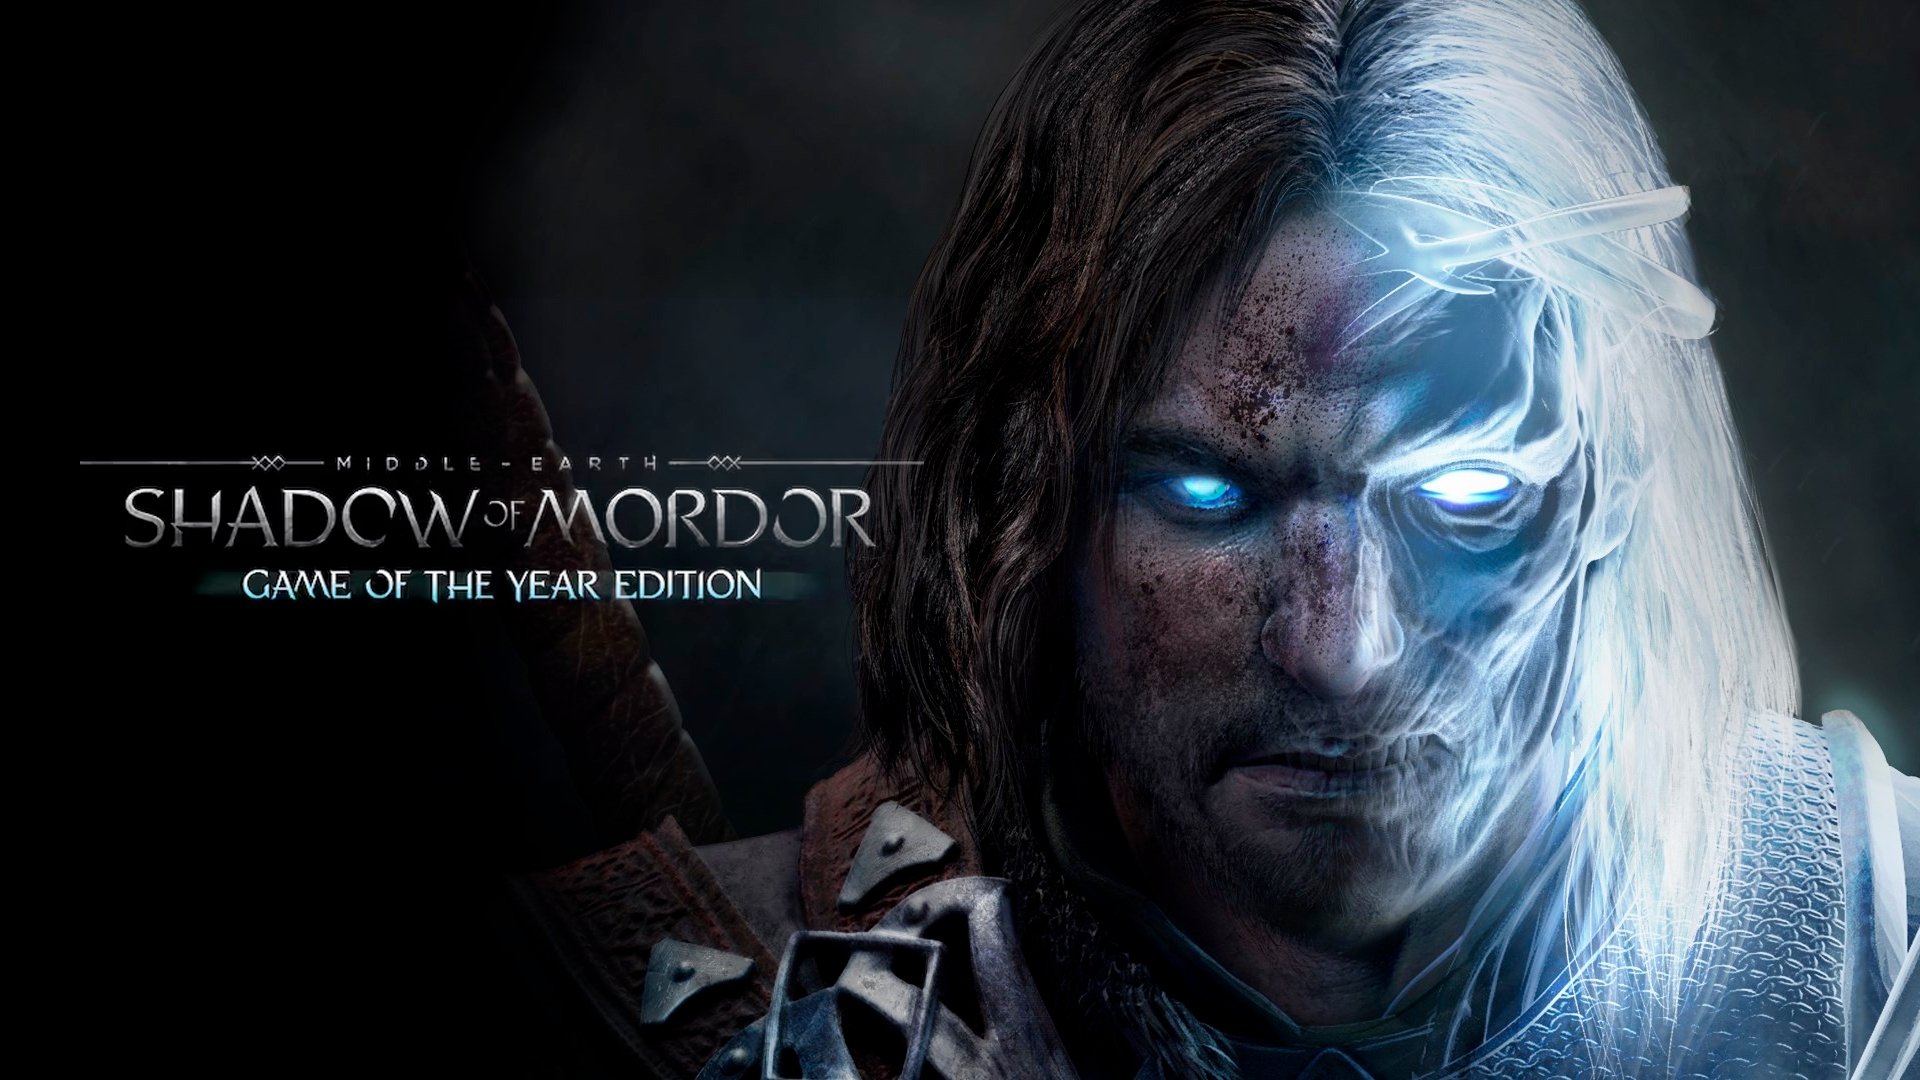 Nuuvem.com on X: Mais barato que uma caixa de bis 😅 O lendário  Middle-earth: Shadow of Mordor - Game of the Year Edition na Black Week da  Nuuvem 🤩 Esse jogo tem